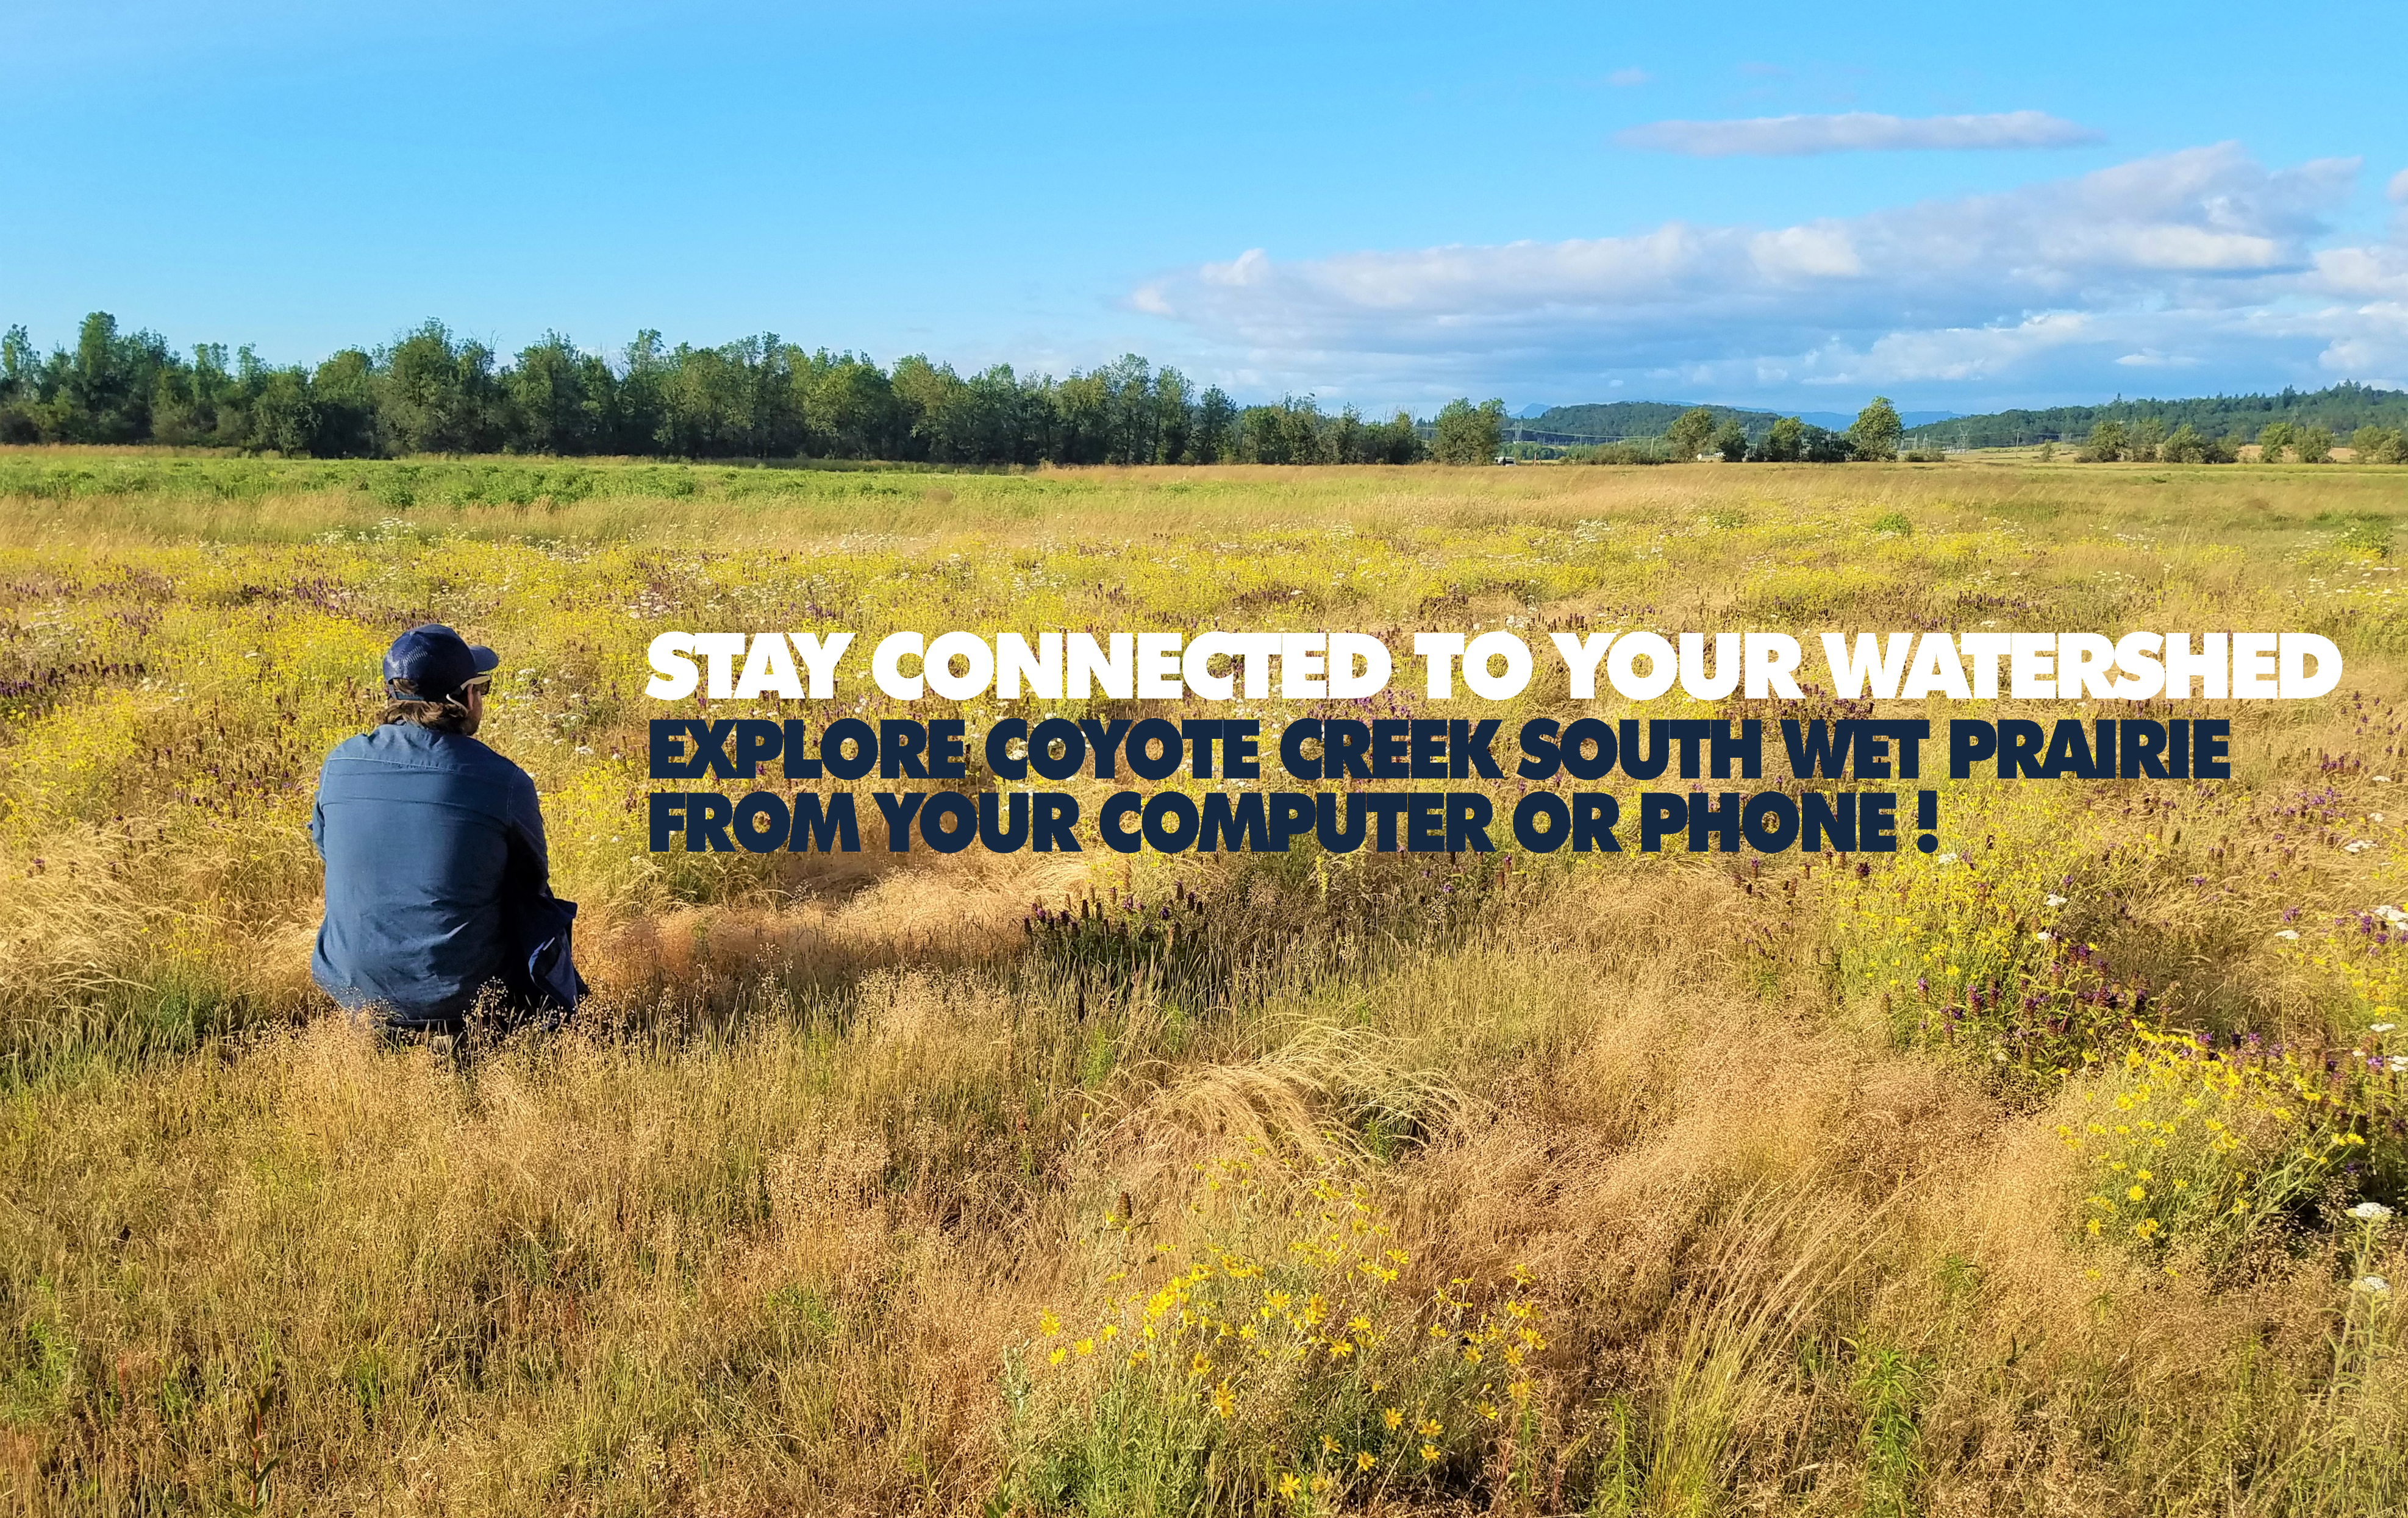 Coyote Creek South Wet Prairie